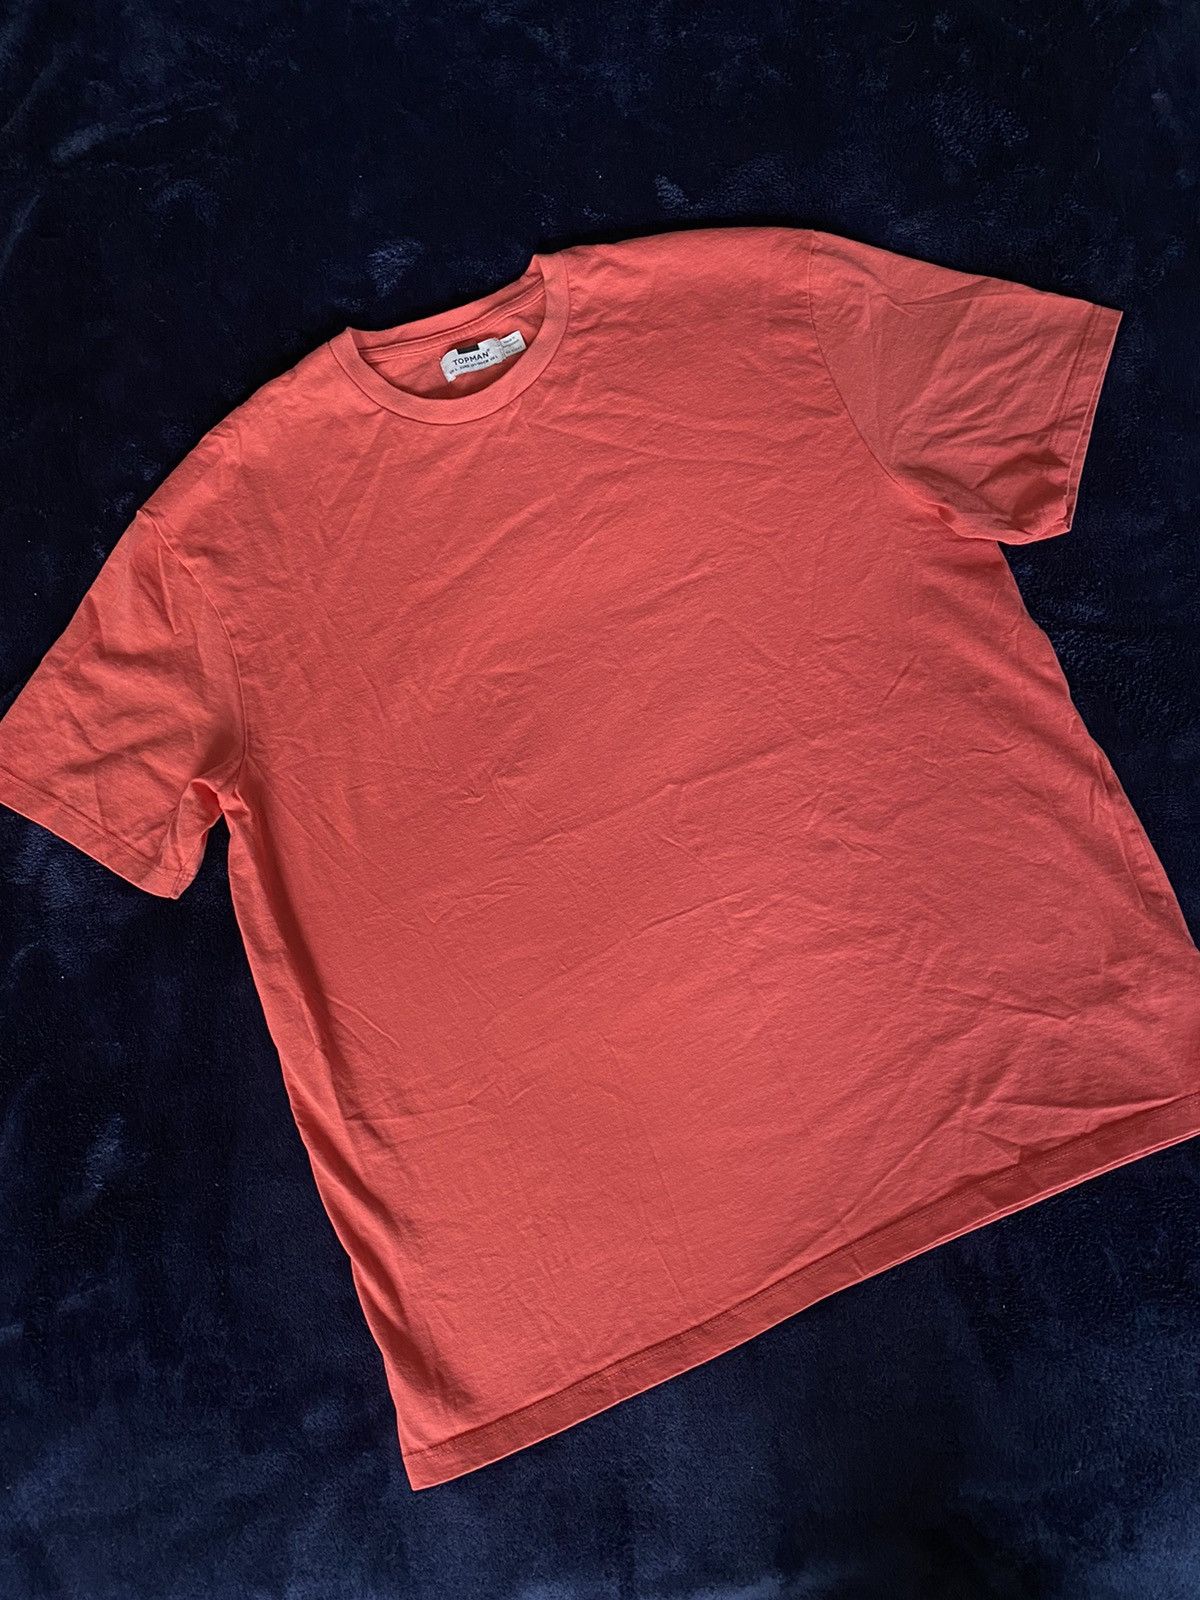 Topman $20 TOPMAN T-Shirt Size US L / EU 52-54 / 3 - 2 Preview